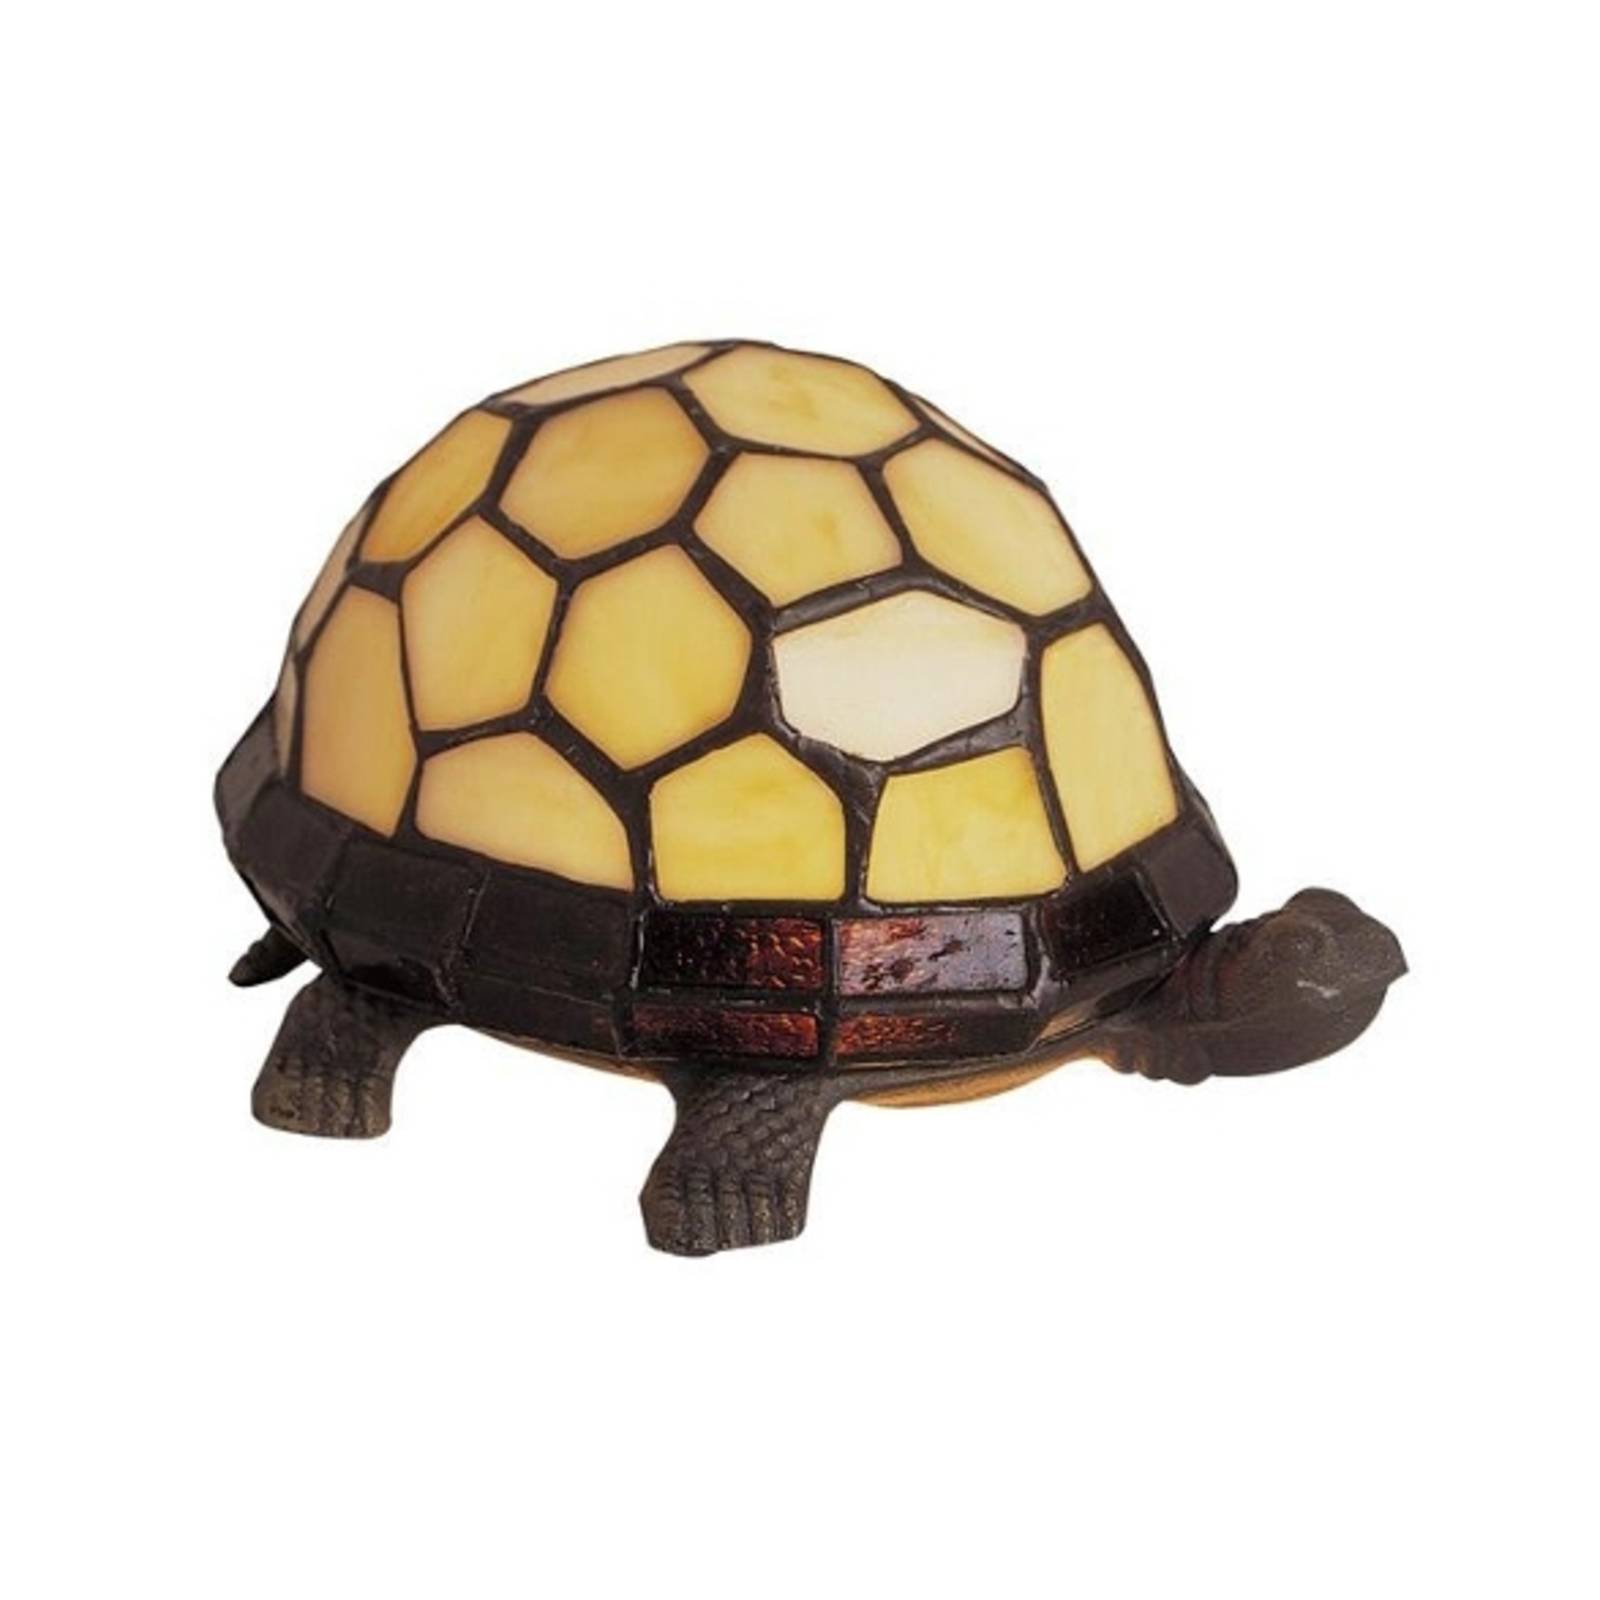 TORTUE - Tischleuchte als Schildkröte von Artistar